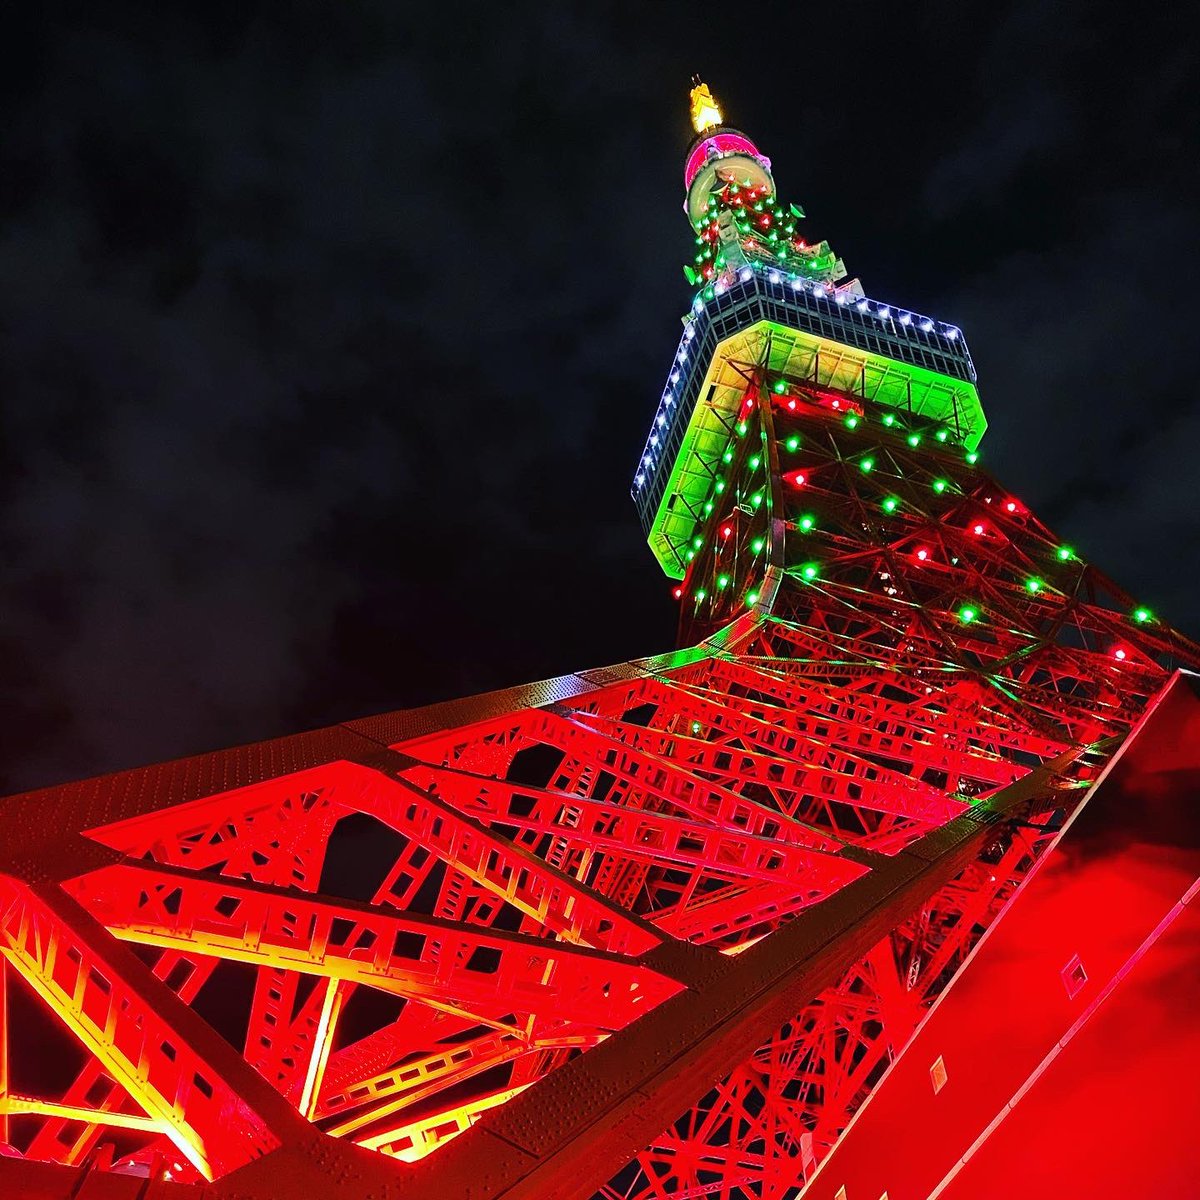 ノッポン弟 Tokyo Tower 公式 サイレント トーキョー 公開記念 スペシャルクリスマスライトアップを点灯中です 一足早いクリスマスツリー仕様の東京タワーは本日24時まで お見逃しなく サイレントトーキョー